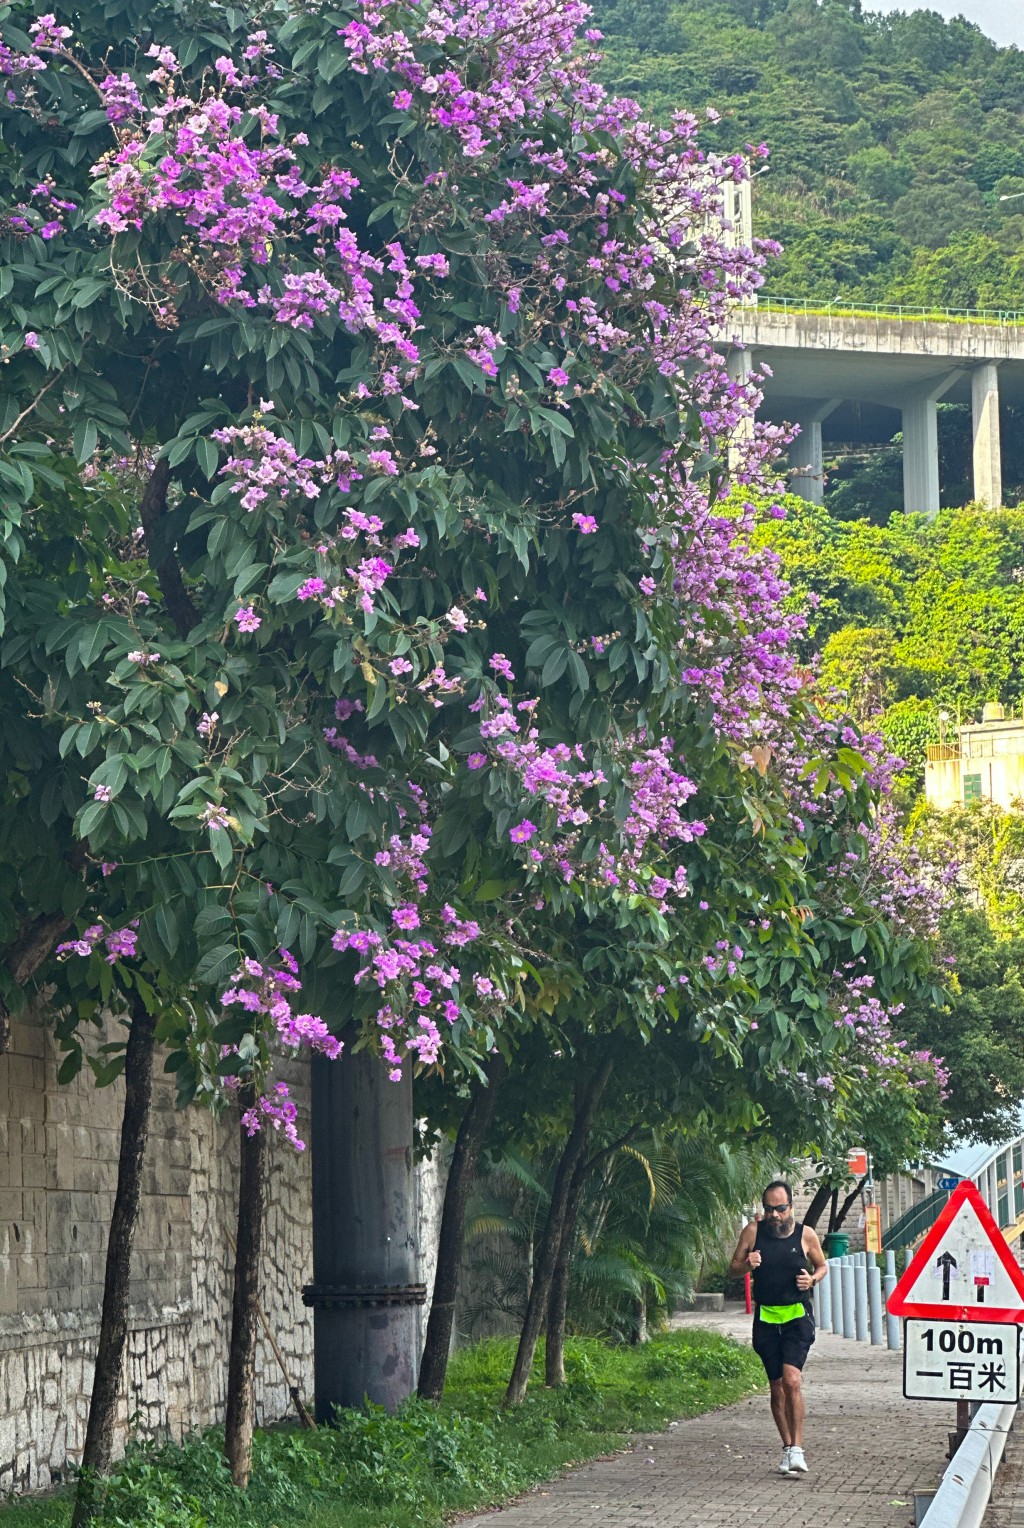 一串串如紫蝴蝶般絢麗的紫色花掛滿樹梢，形成令人驚嘆的紫色花道。